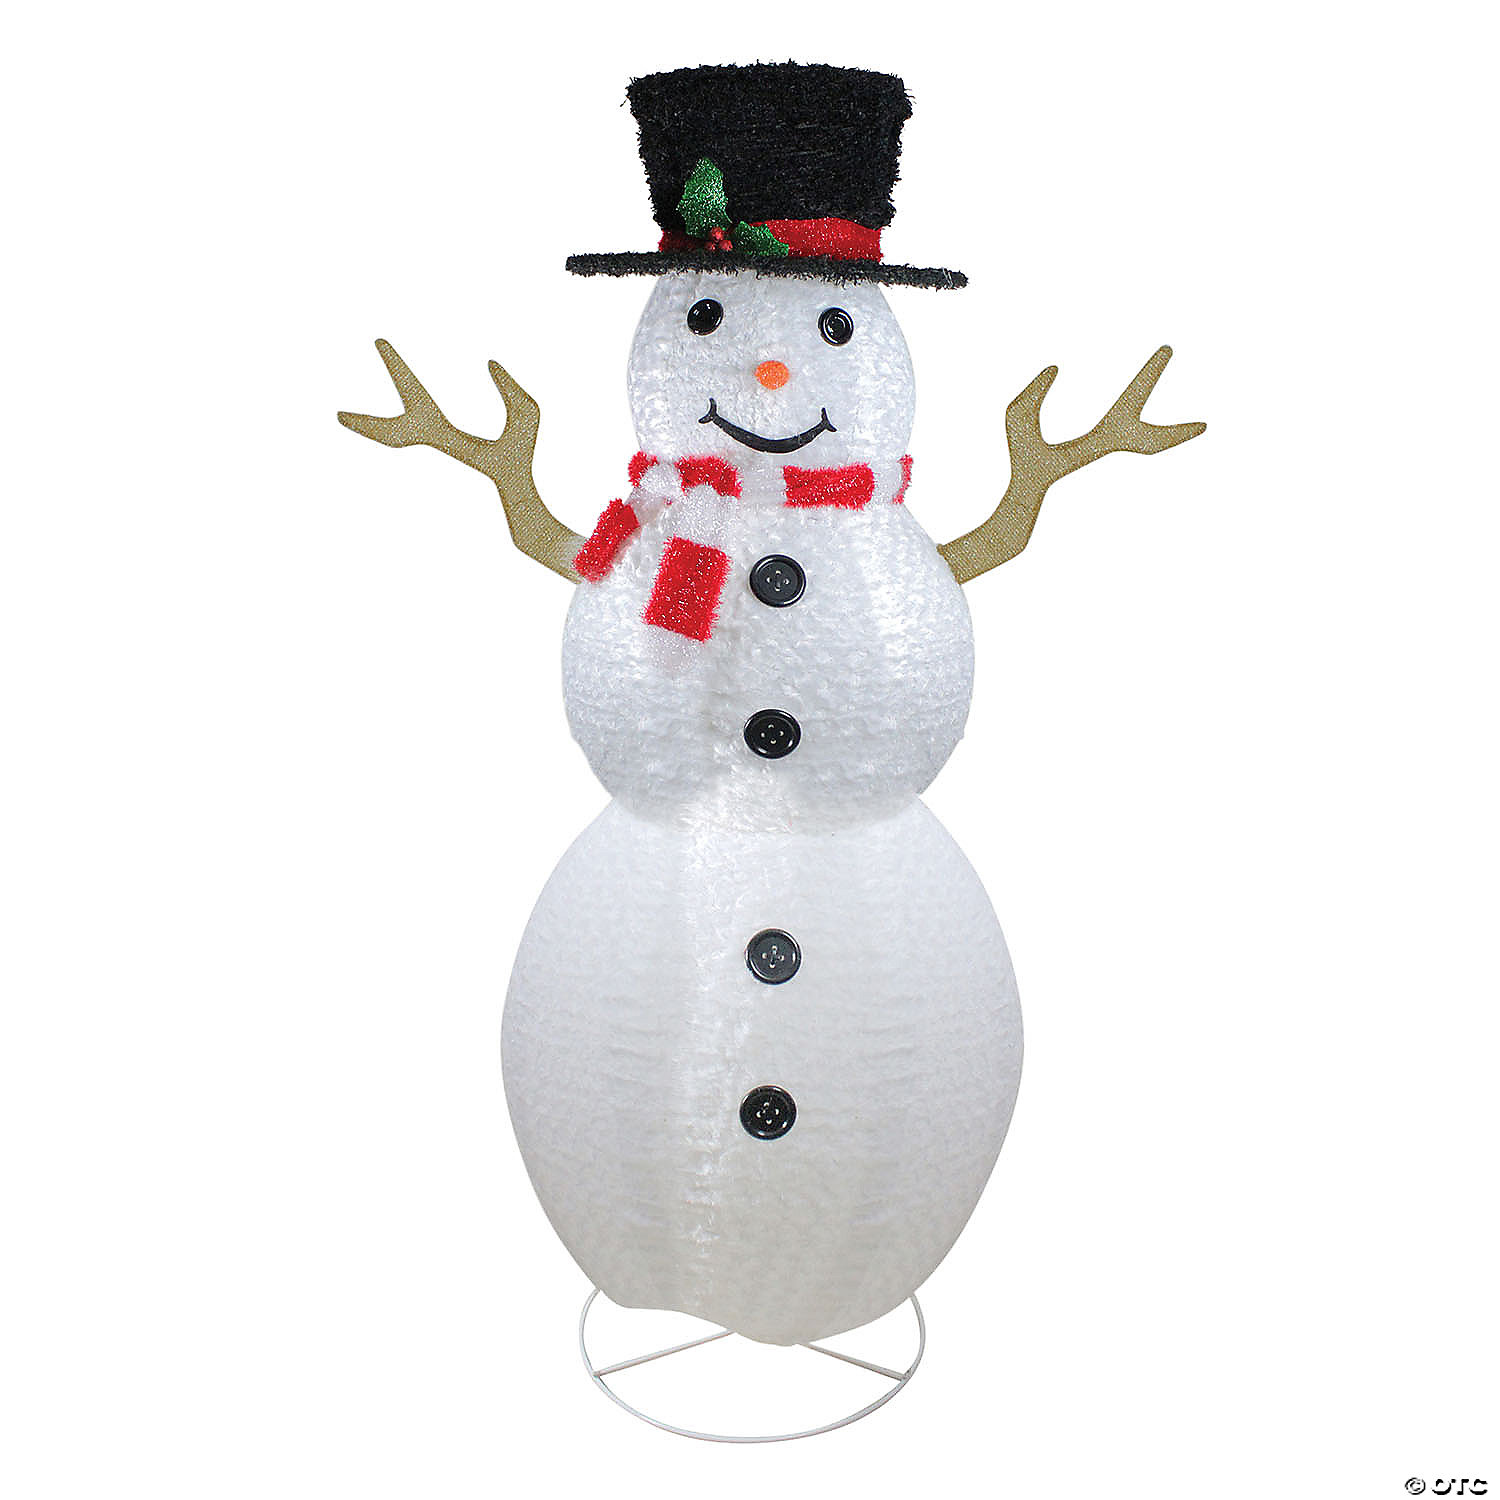 72" Fluffy Top Hat Lighted Snowman Sculpture Outdoor Christmas Decor 